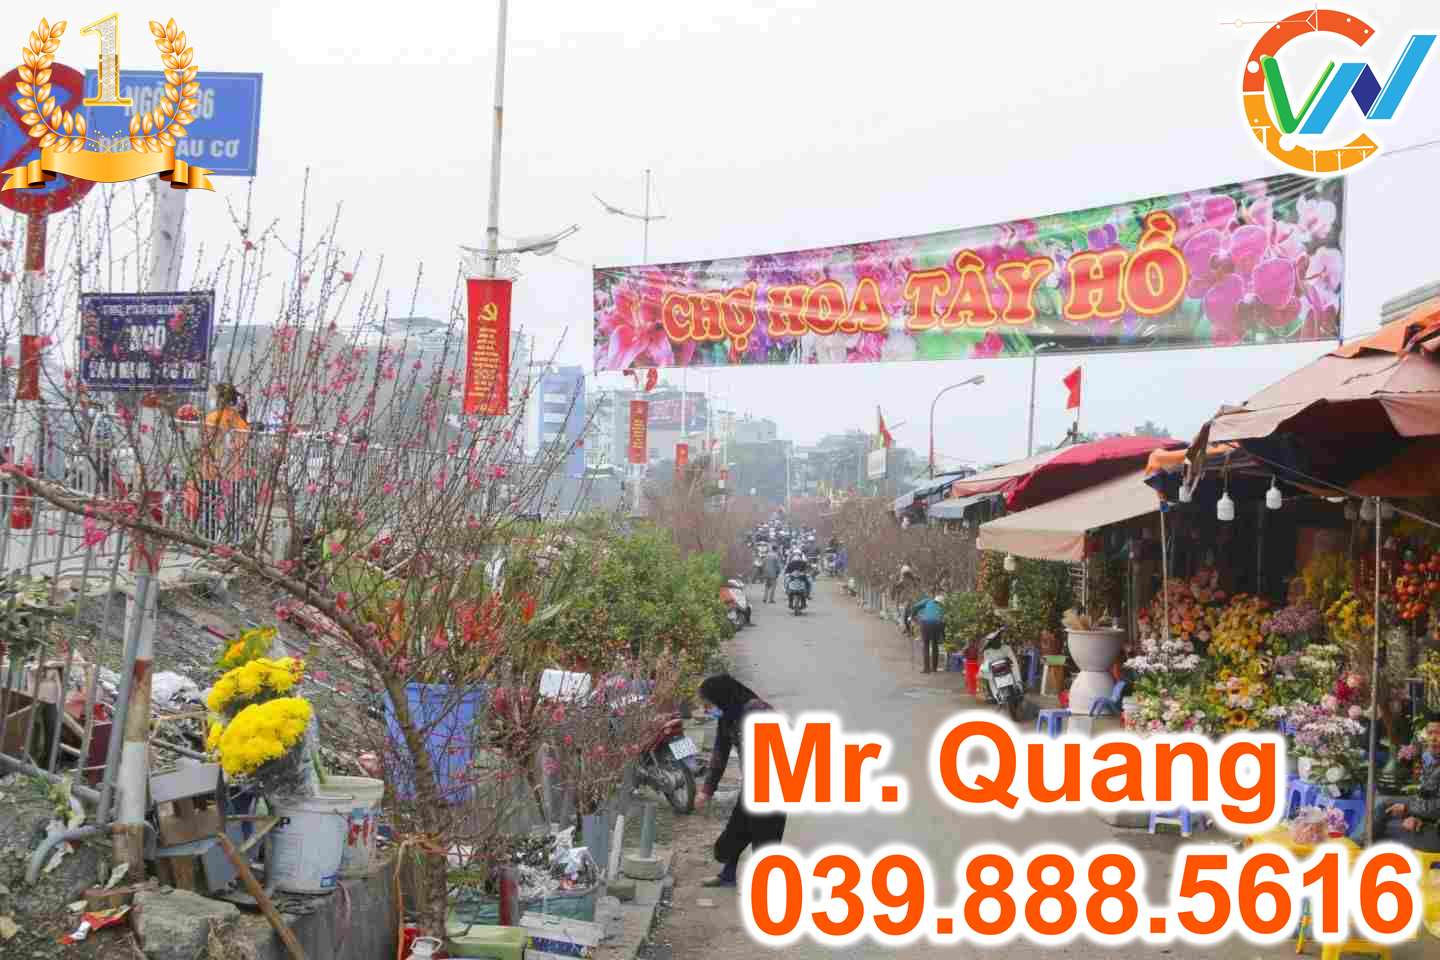 Chợ Hoa Quảng An Tây Hồ